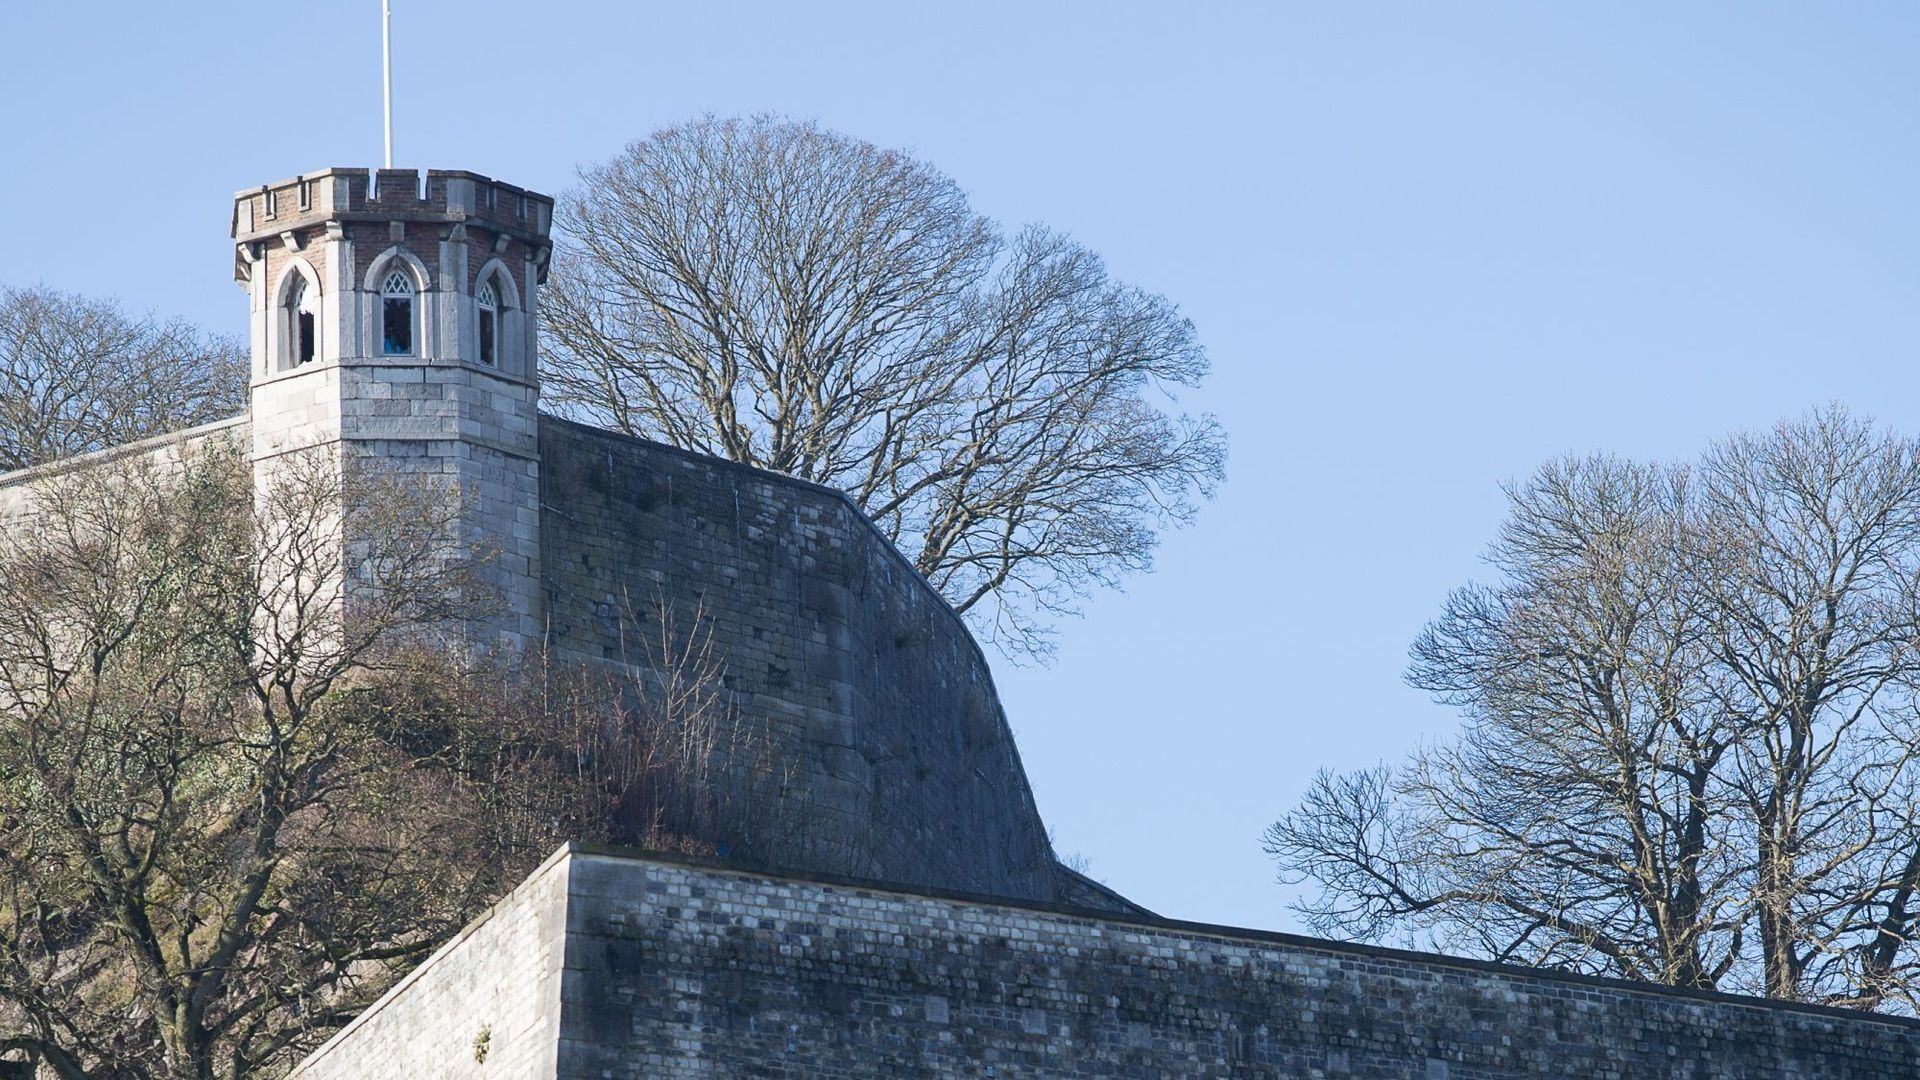 Les 7 phases de travaux de rénovation de la Citadelle de Namur débuteront au printemps